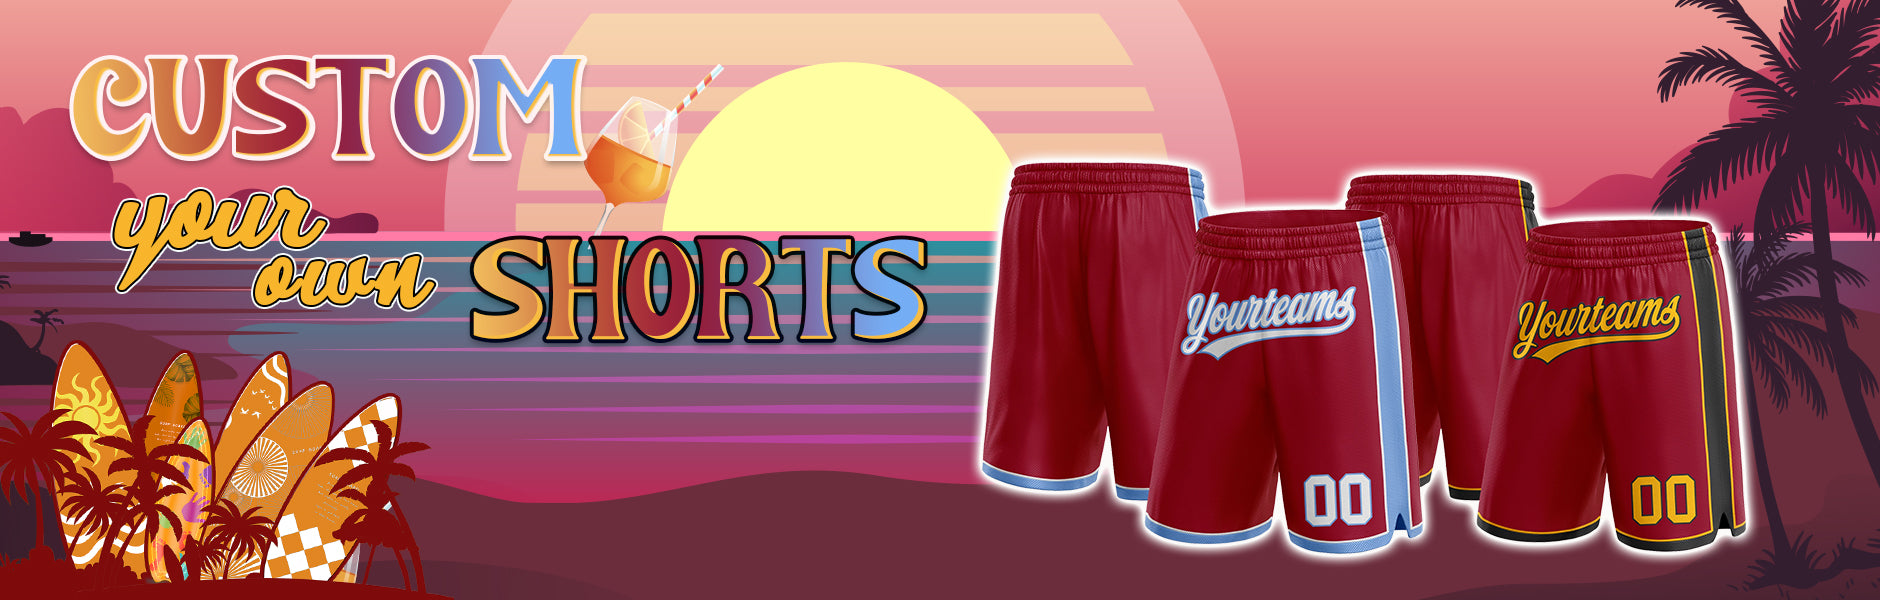 custom shorts maroon jersey